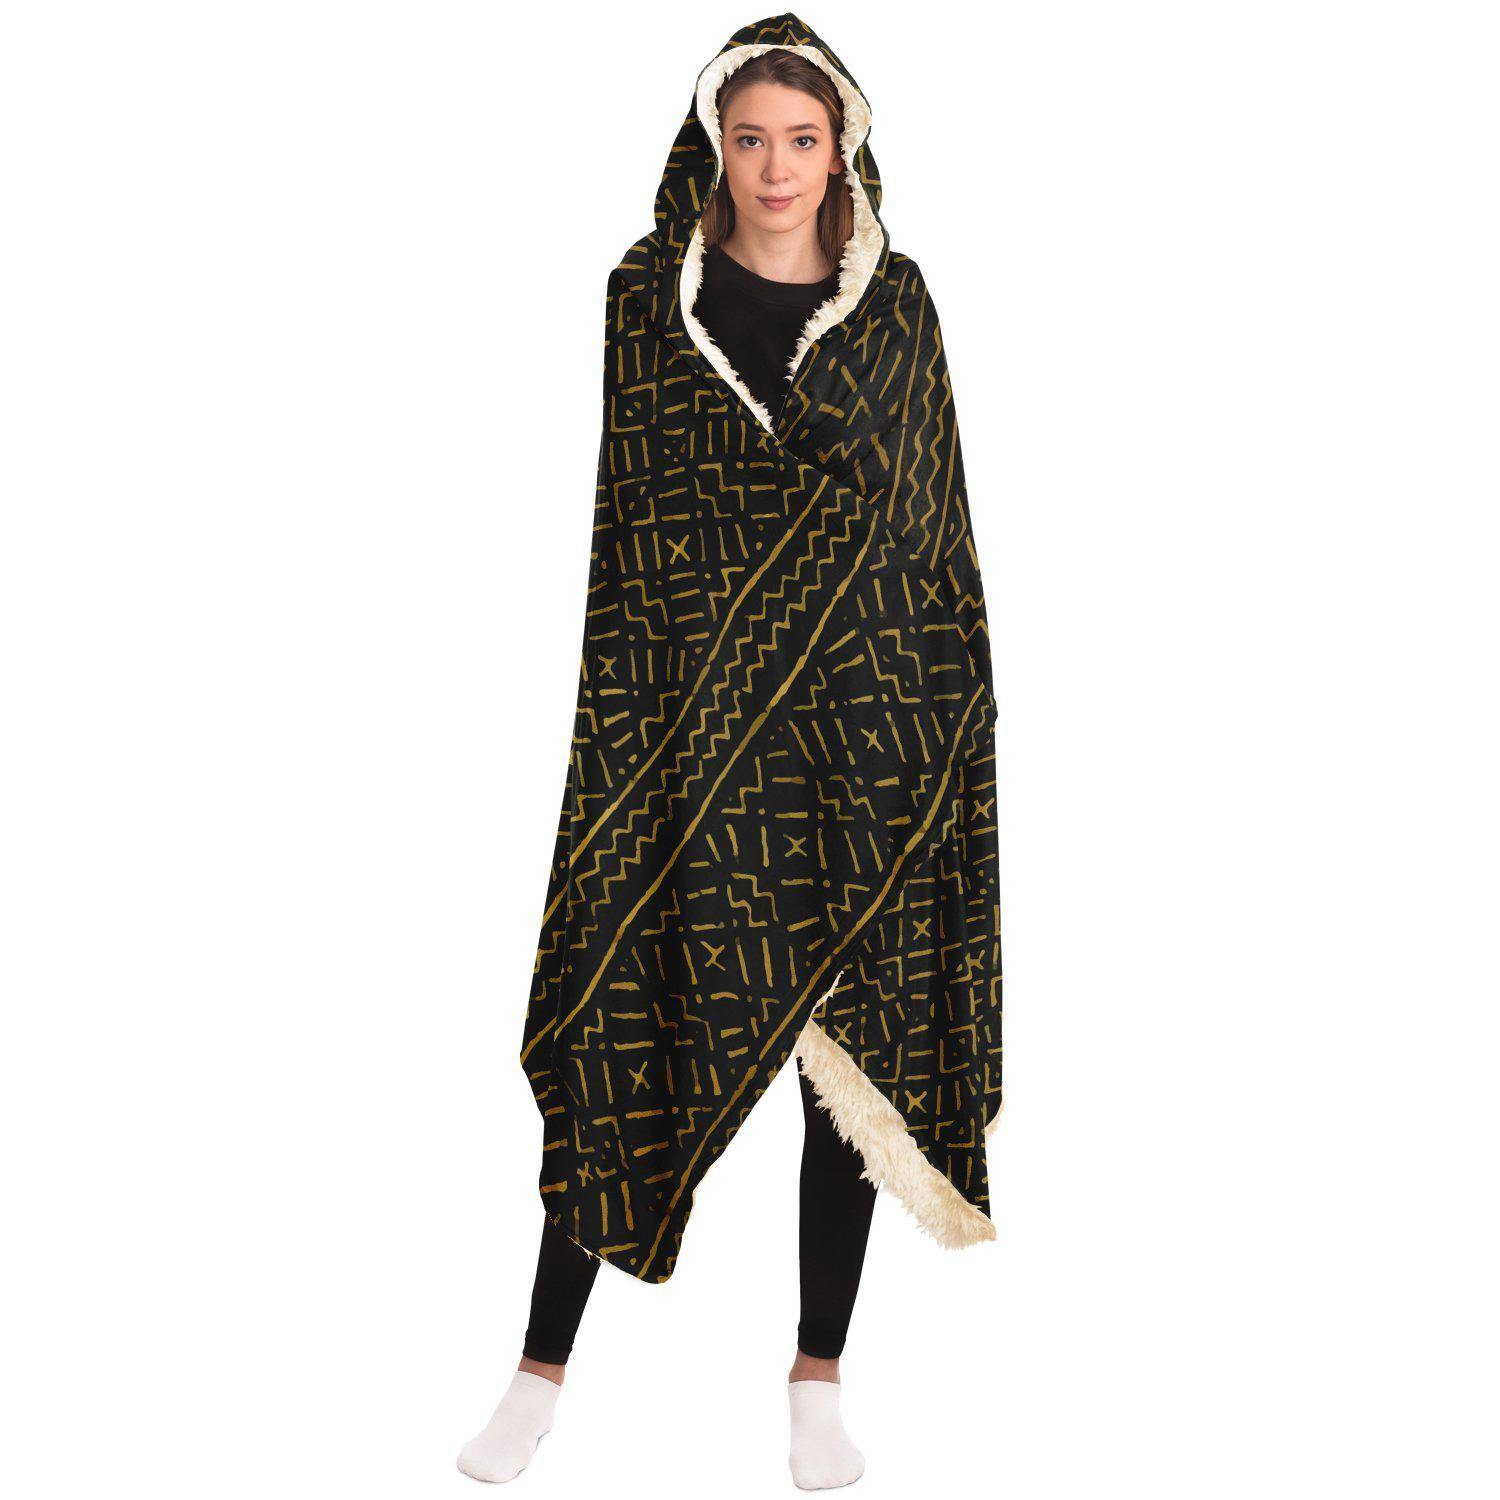 Hooded Blanket - AOP Hooded Blanket Bogolan Mali Traditional African Design